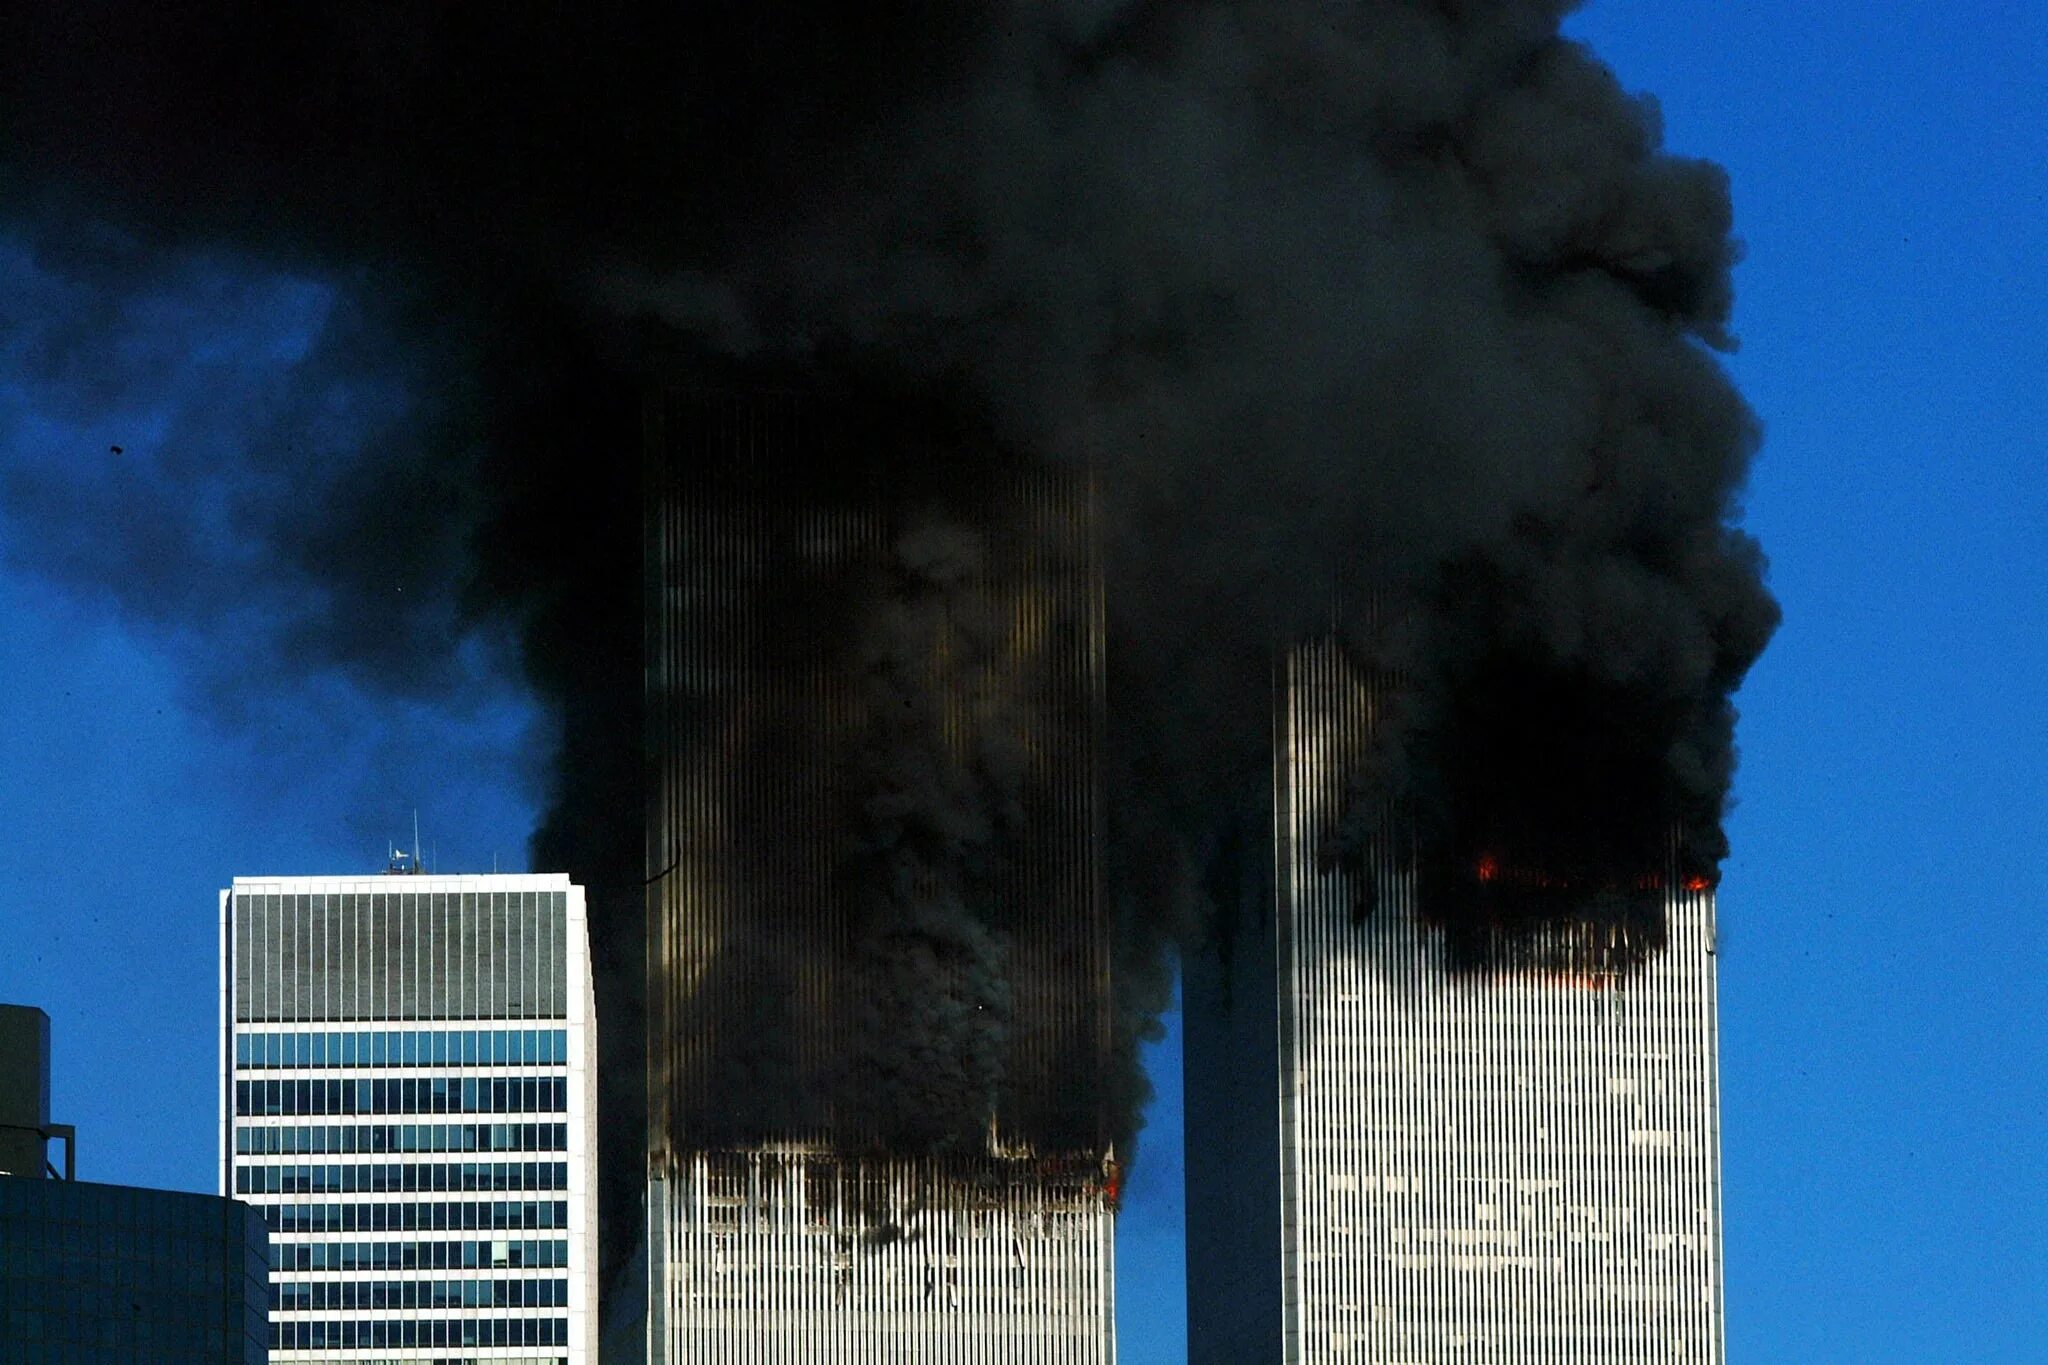 Башни-Близнецы 11 сентября 2001. Сентябрь 2001 башни Близнецы. Башня близнецов 11 сентября 2001 год. Сша 2001 года террористическая атака 11 сентября